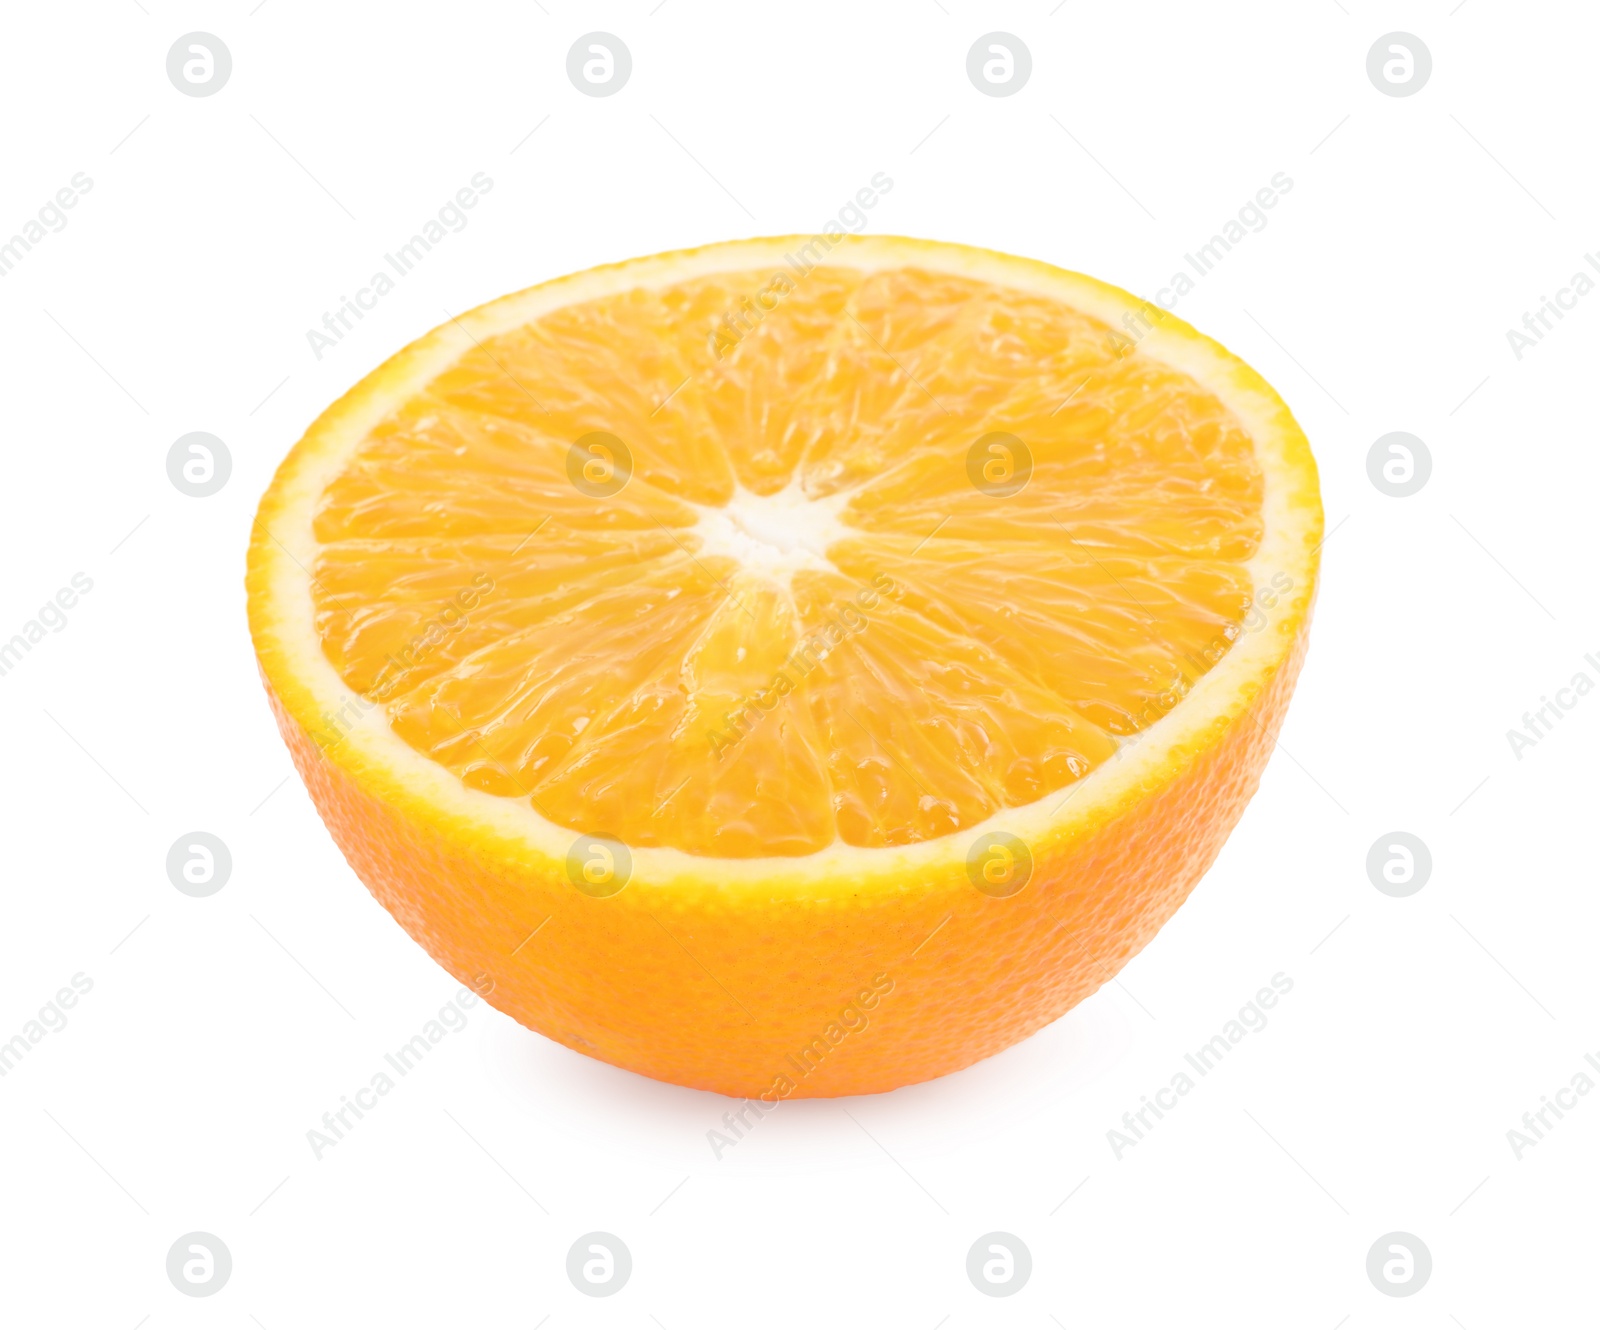 Photo of Half of fresh ripe orange isolated on white